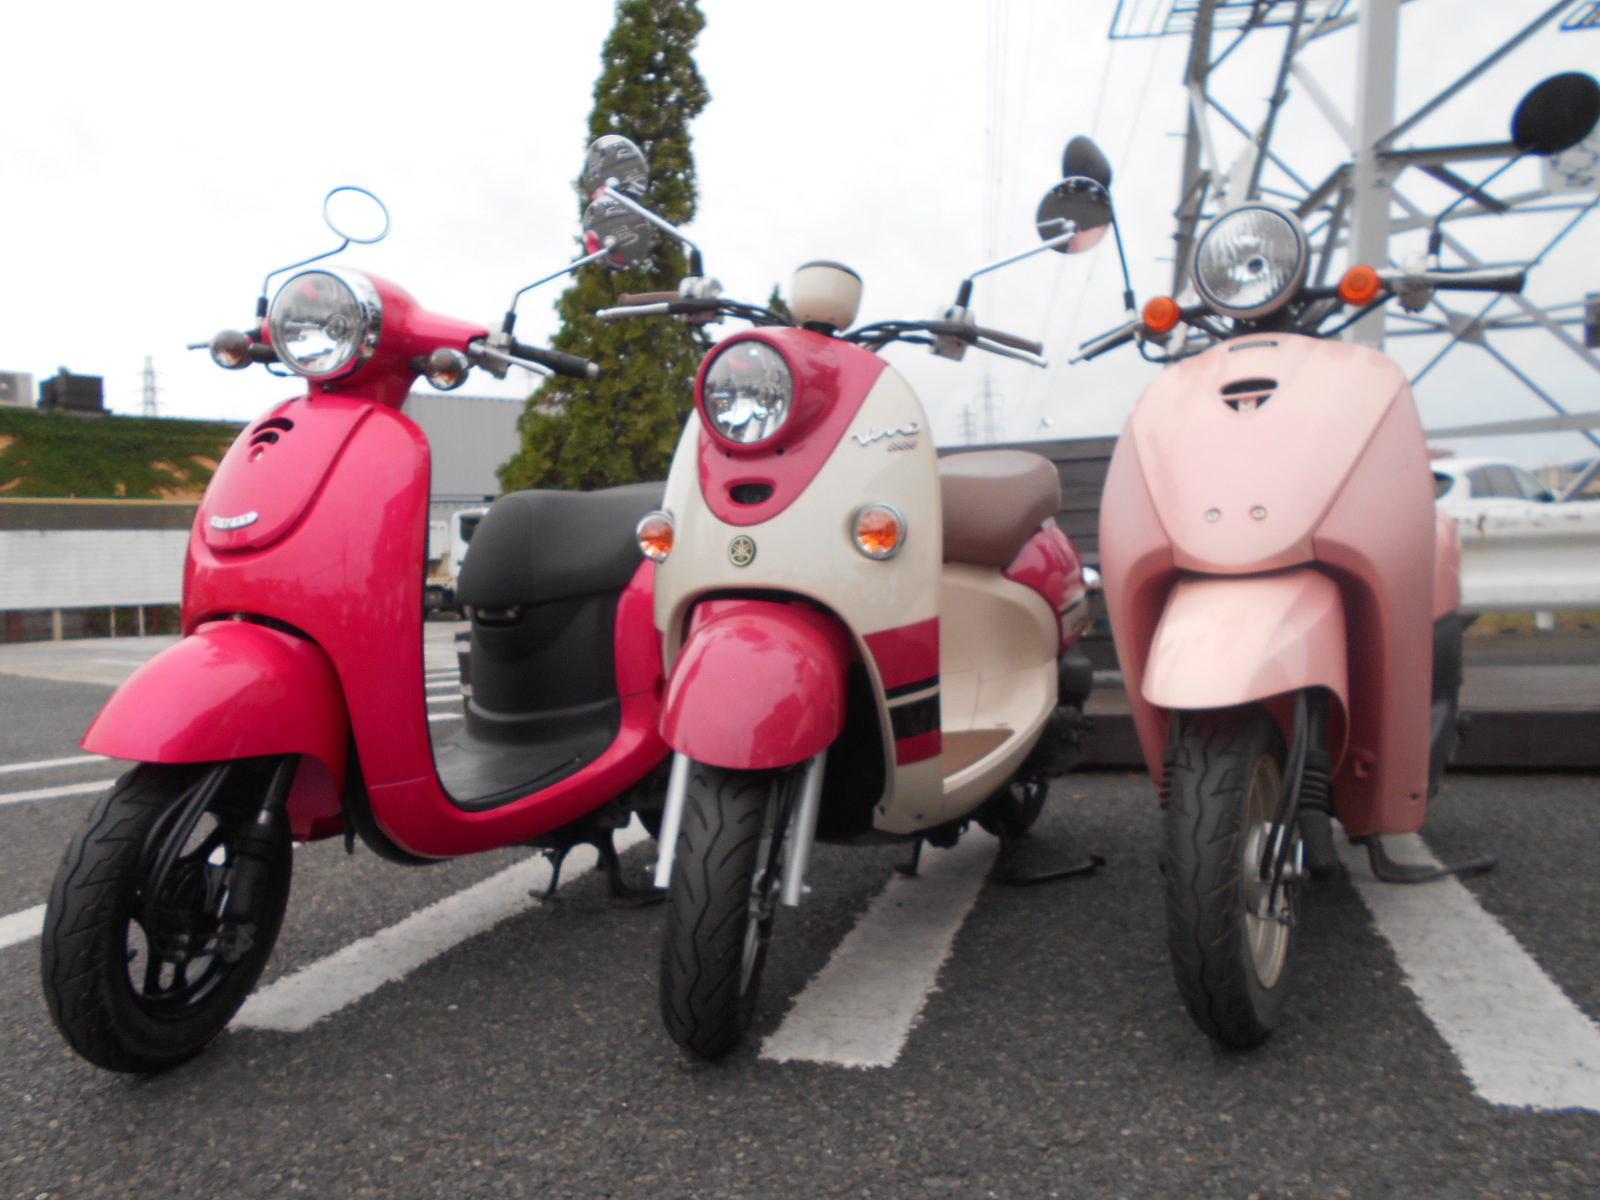 ピンクな原付 最新情報 U Media ユーメディア 中古バイク 新車 バイク探しの決定版 神奈川 東京でバイク探すならユーメディア